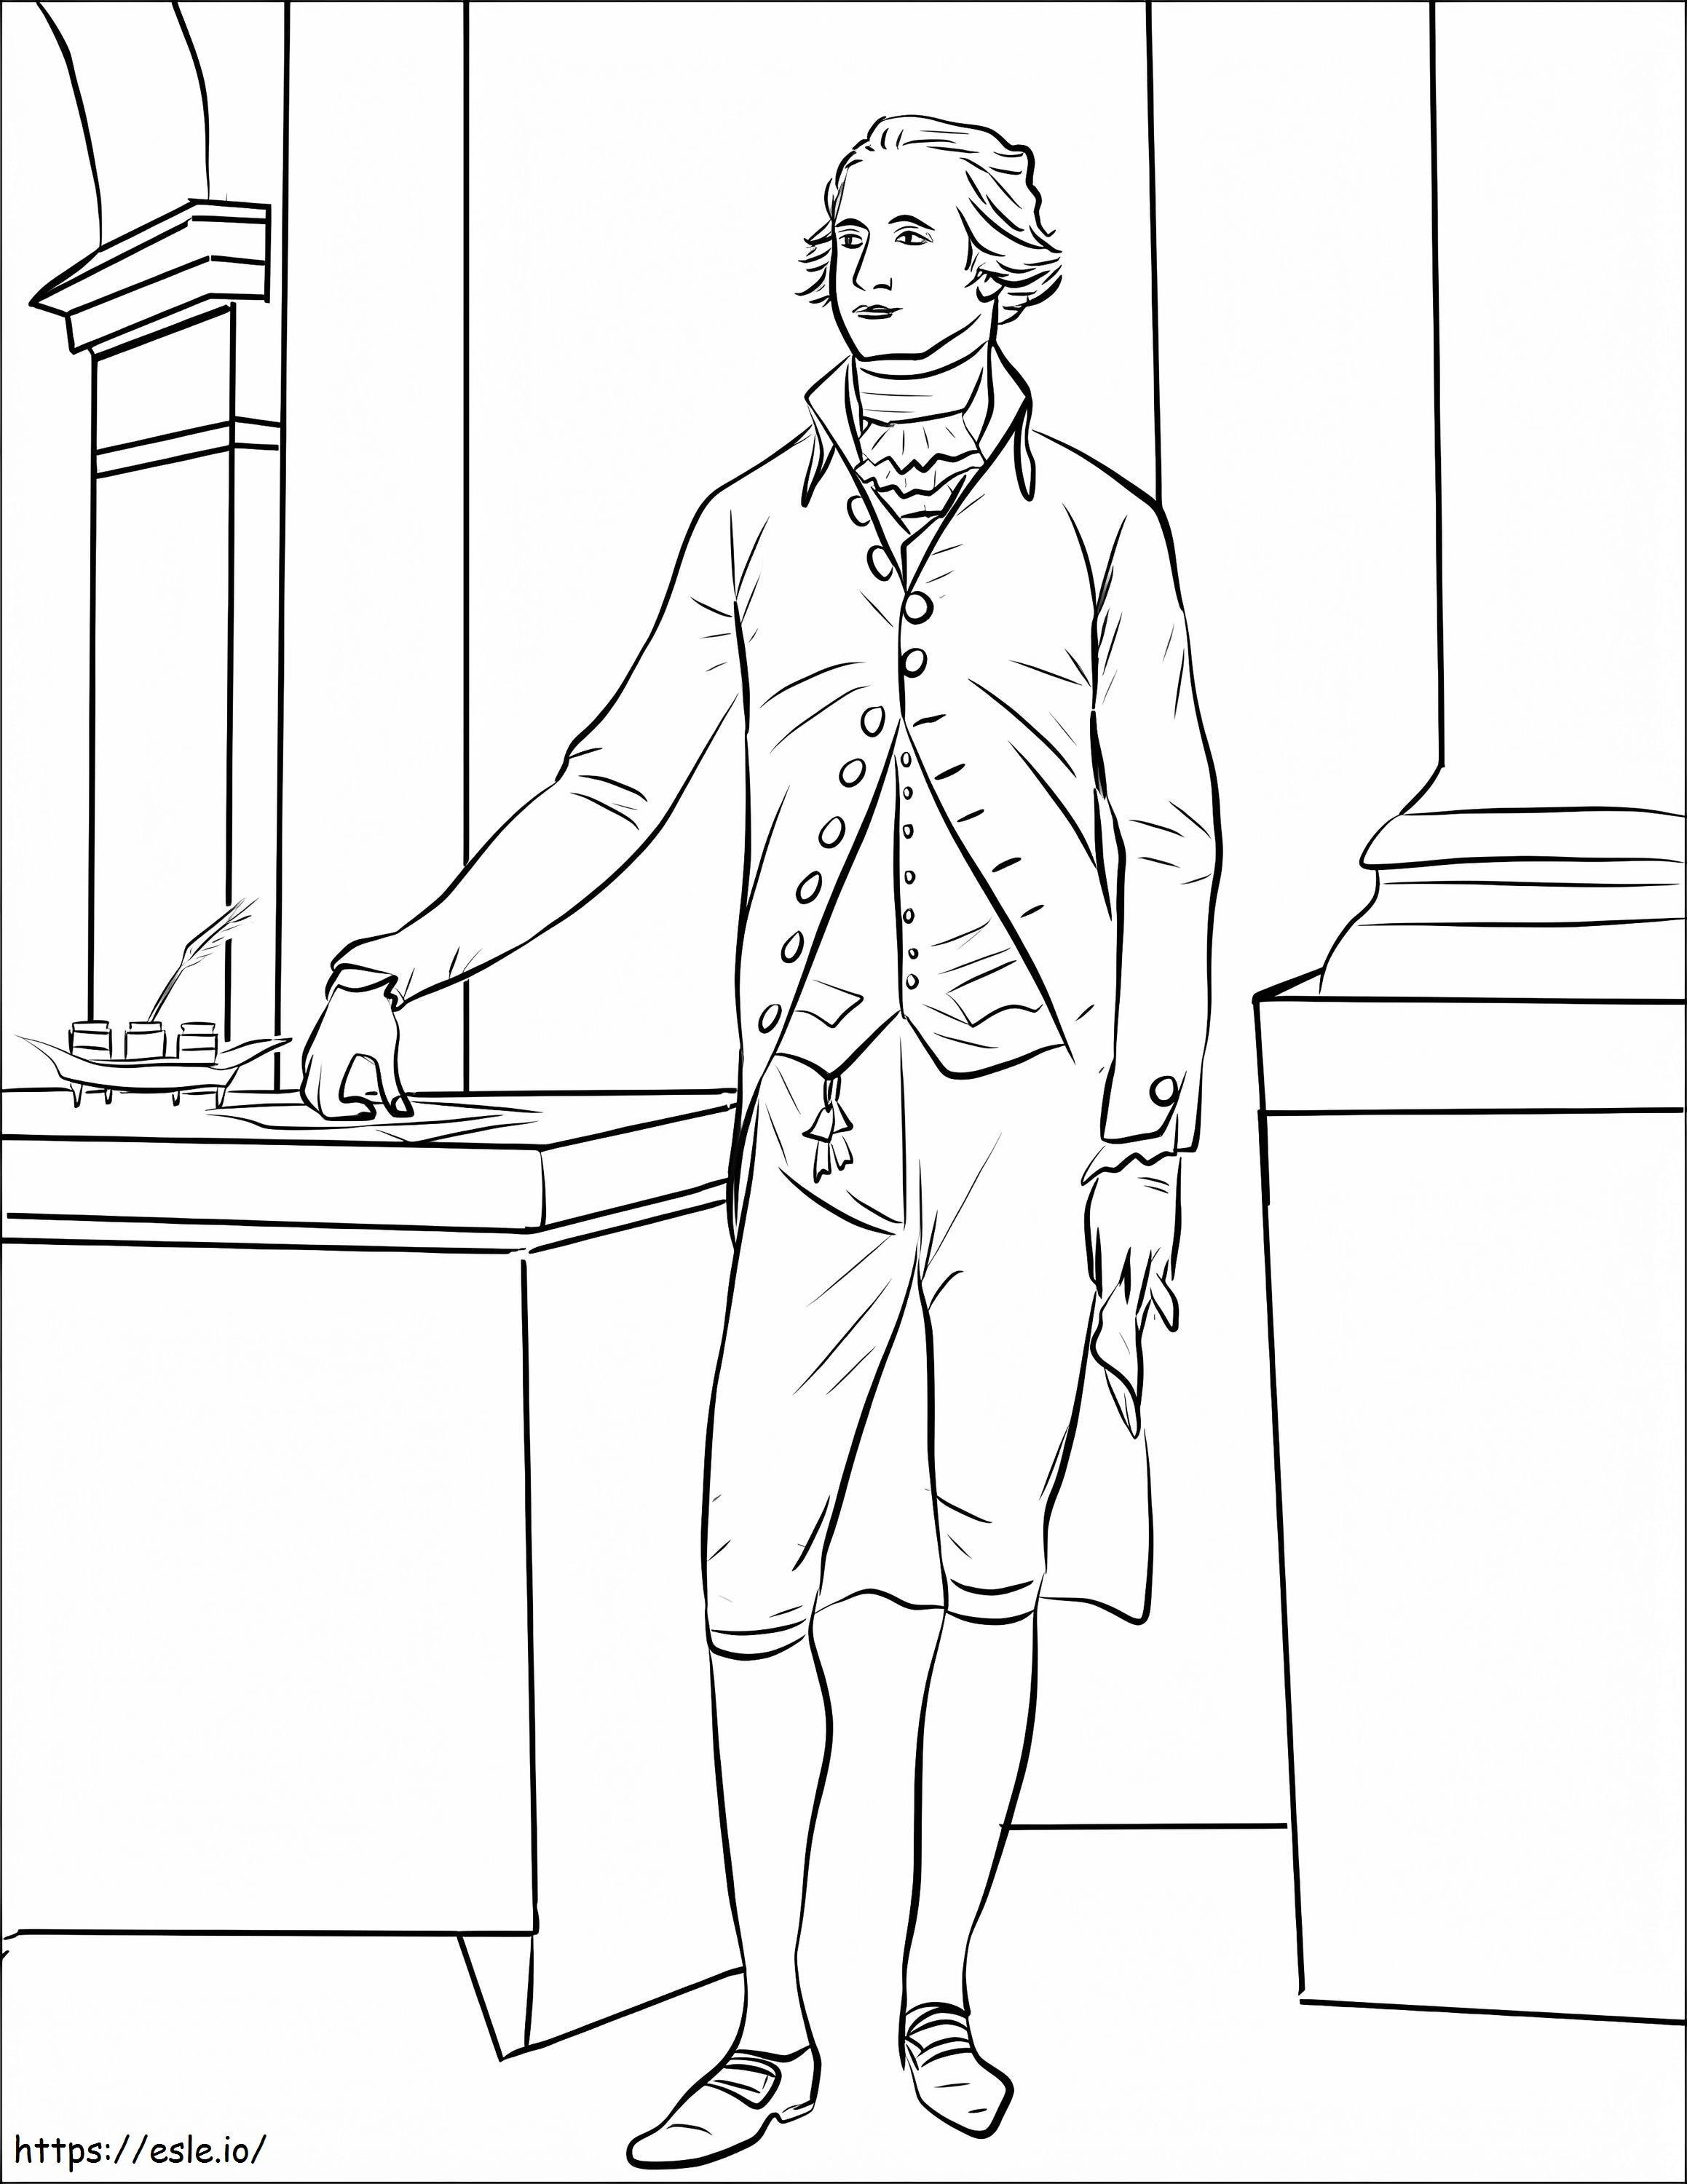 Alexander Hamilton boyama